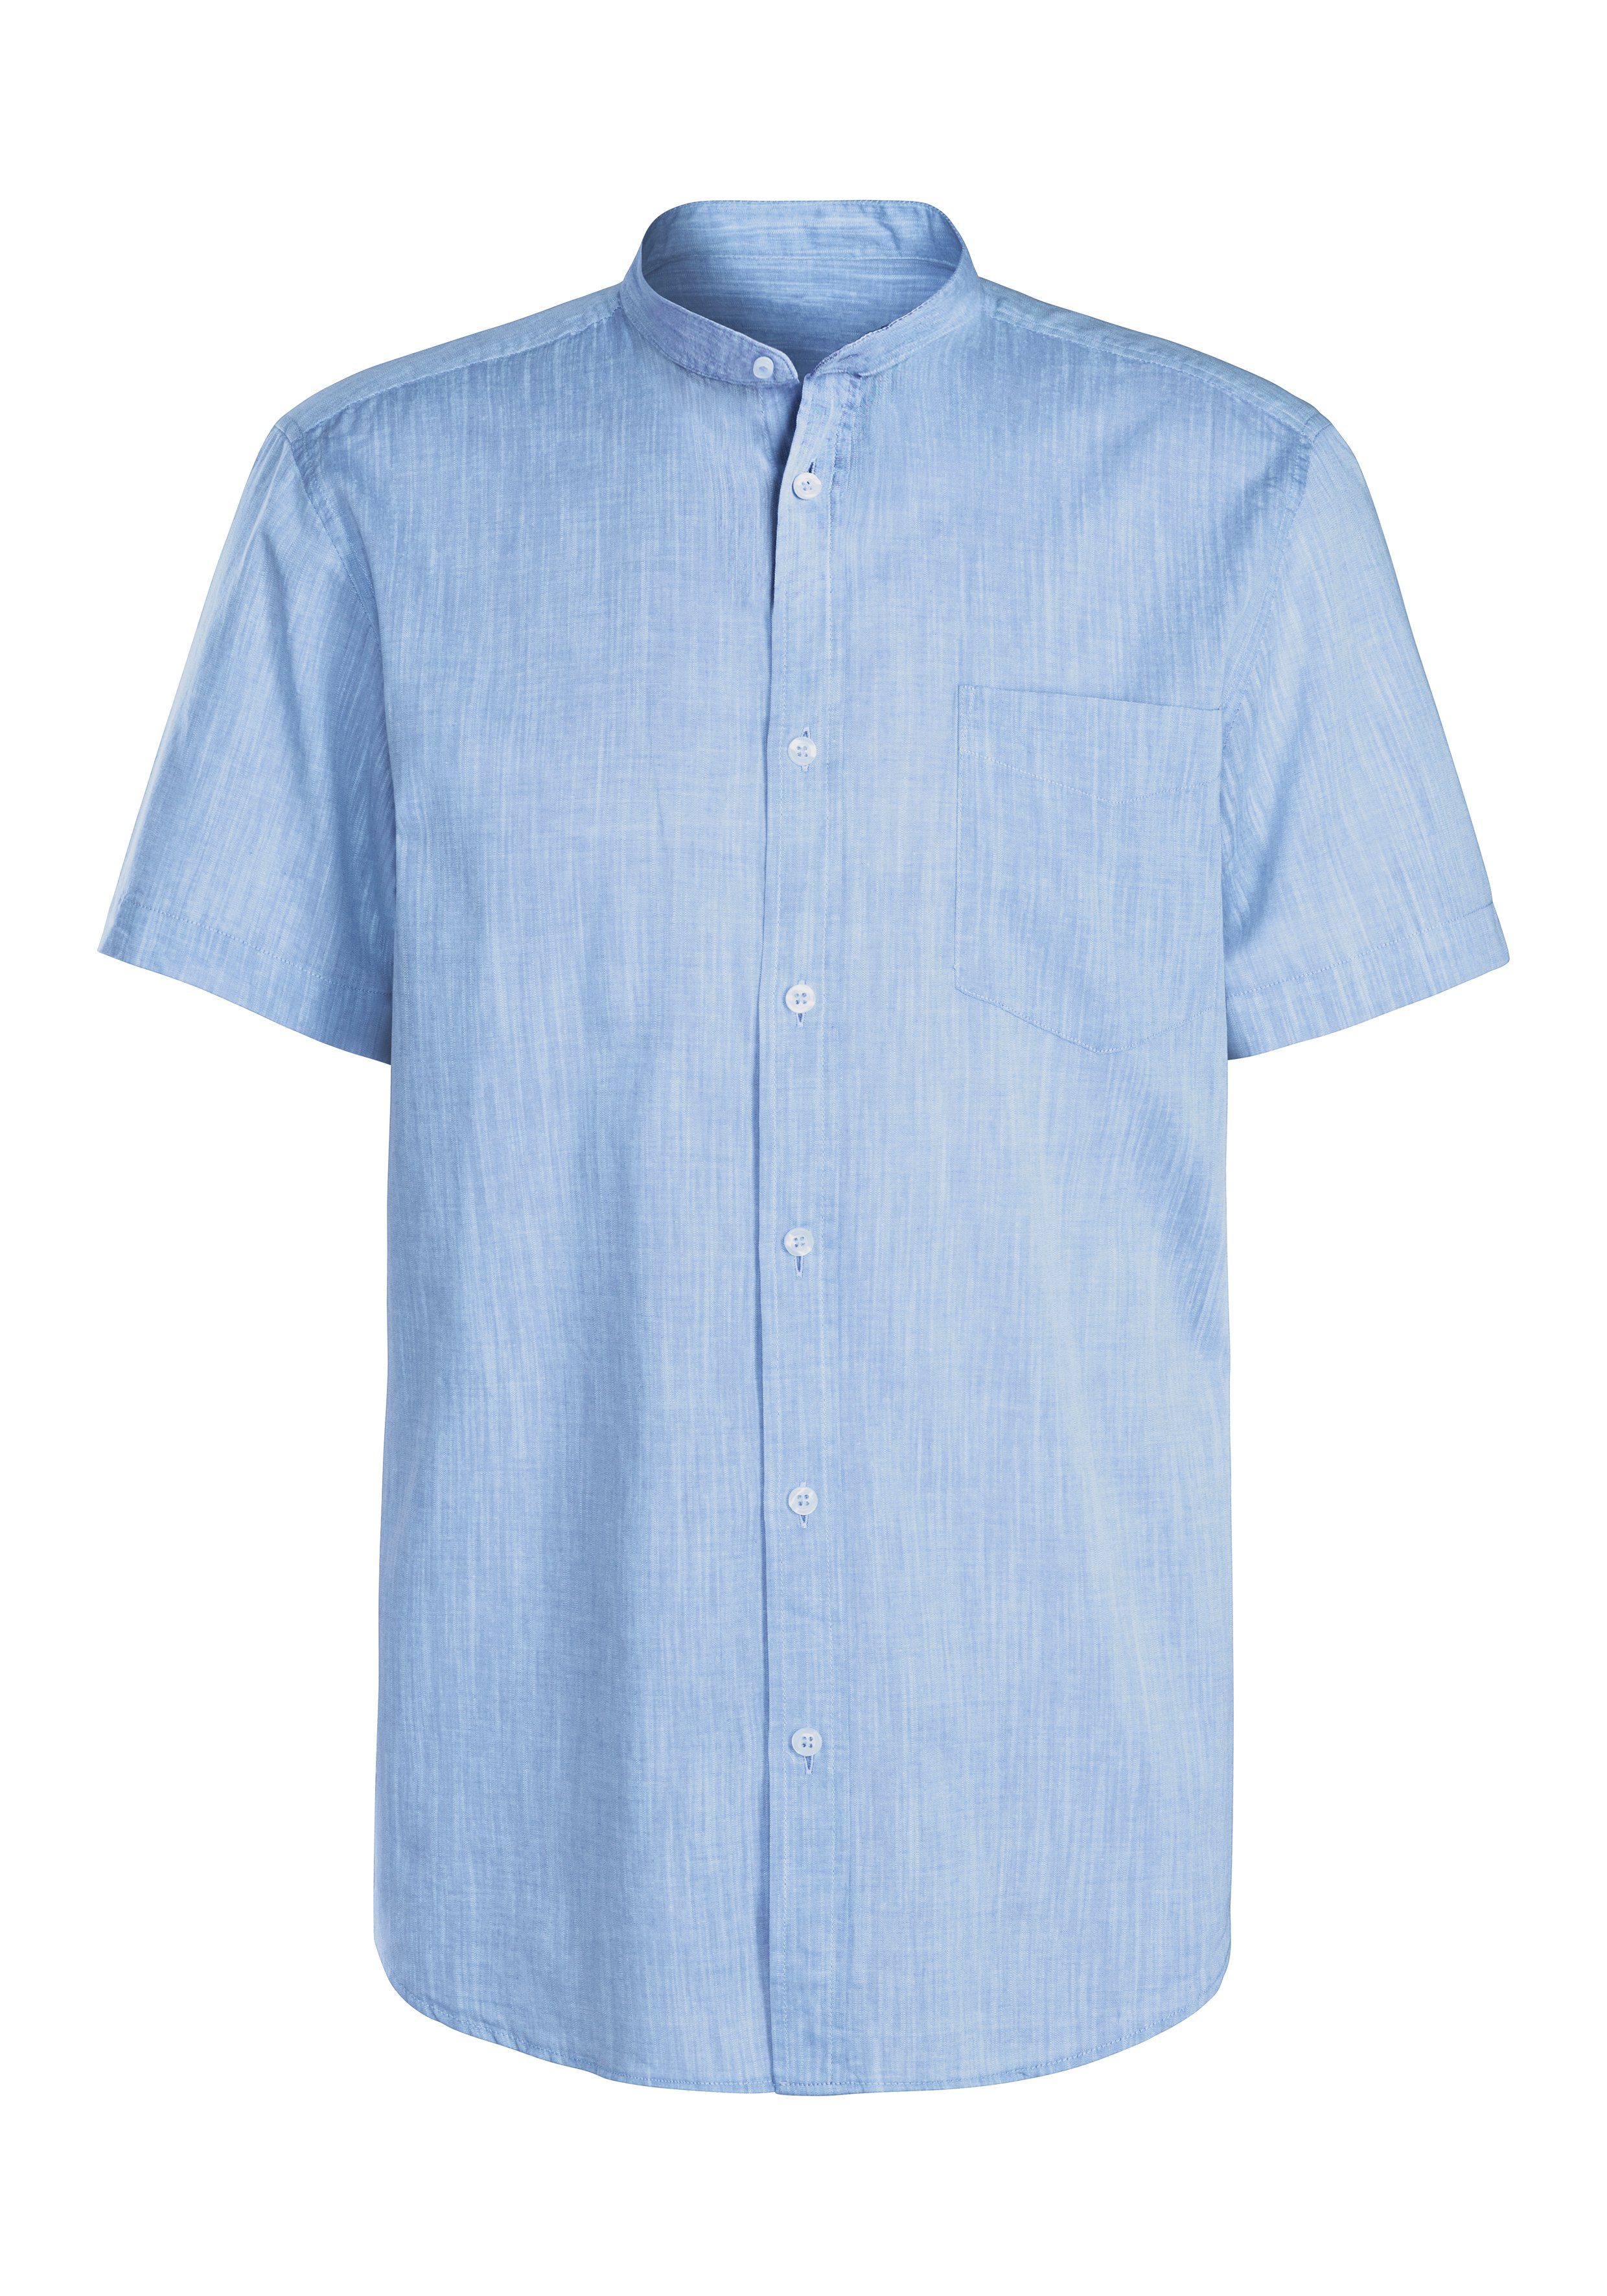 H.I.S Kurzarmhemd Stehkragenhemd blau